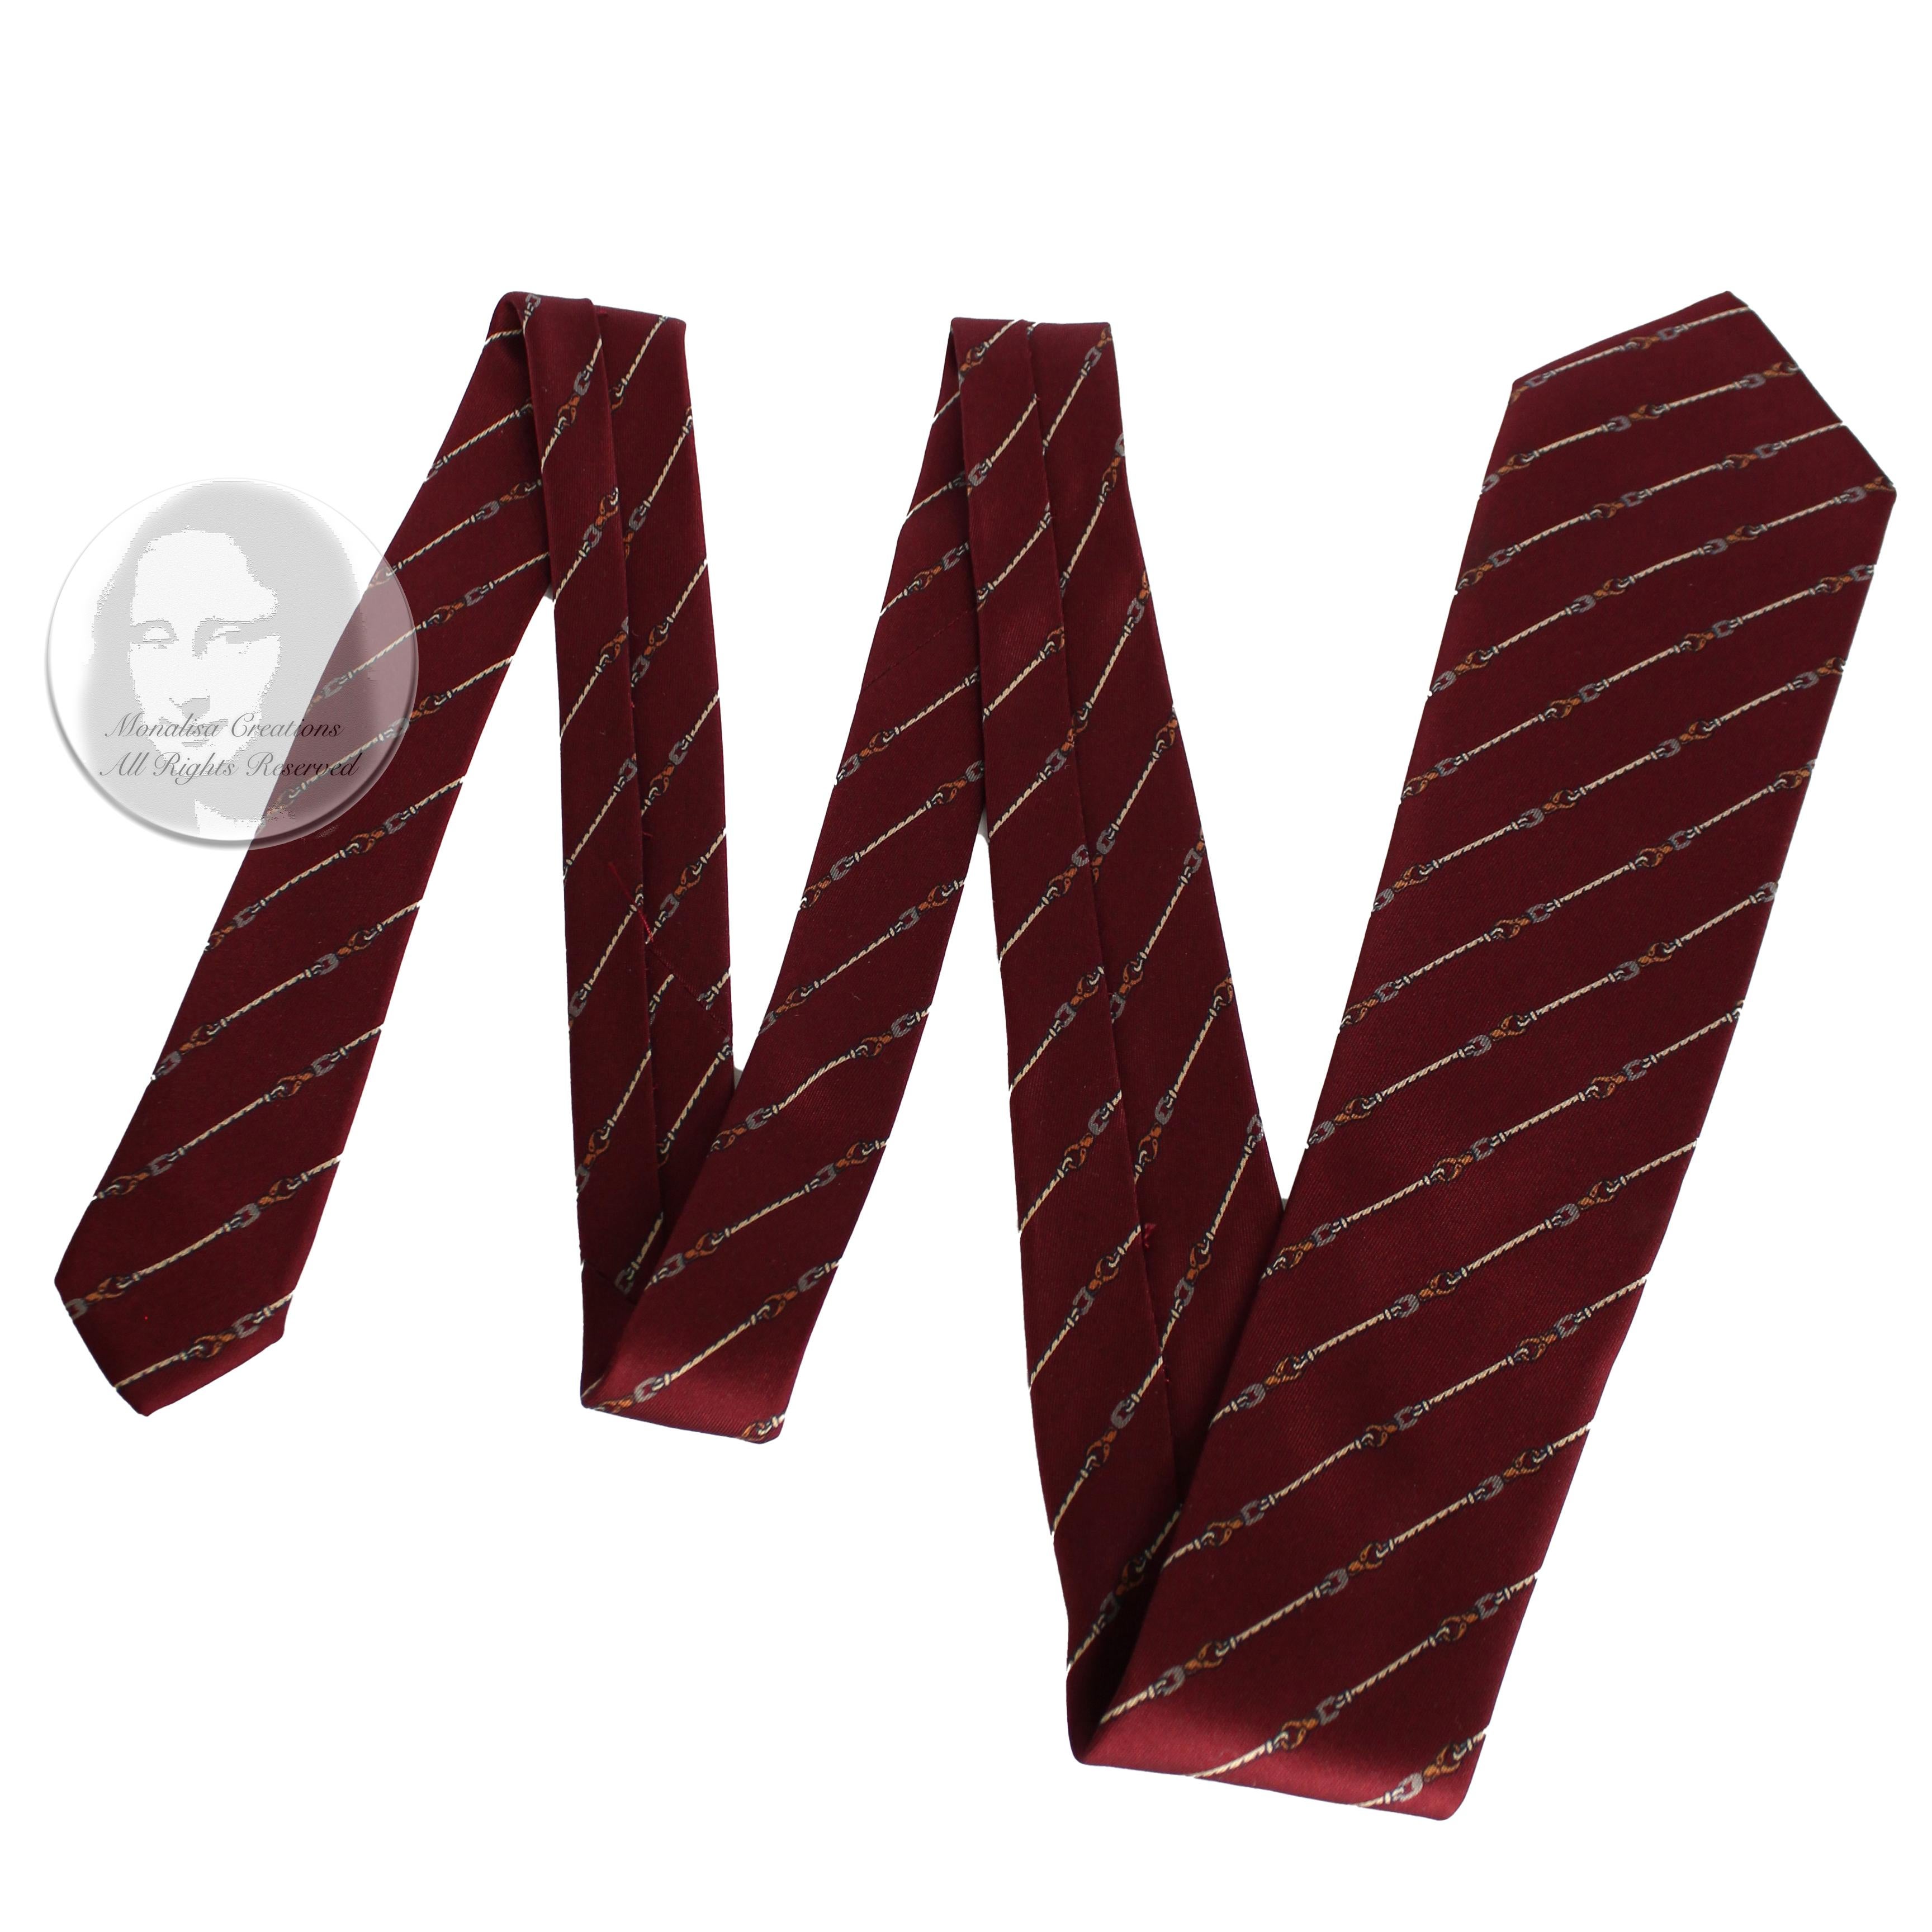 Cravate pour homme Gucci d'occasion, authentique, vintage, probablement fabriquée dans les années 1970. Réalisé en soie, il présente un imprimé classique et discret de mors de cheval sur fond rouge brique.  

Une cravate merveilleusement élégante de